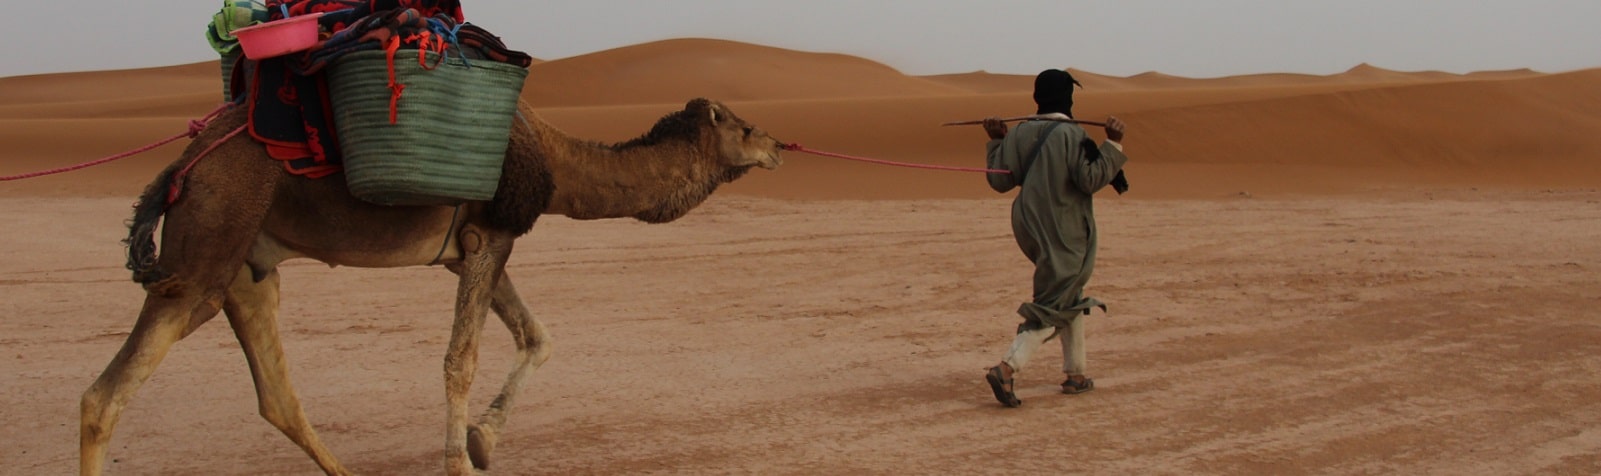 sahara camel trekking tour 